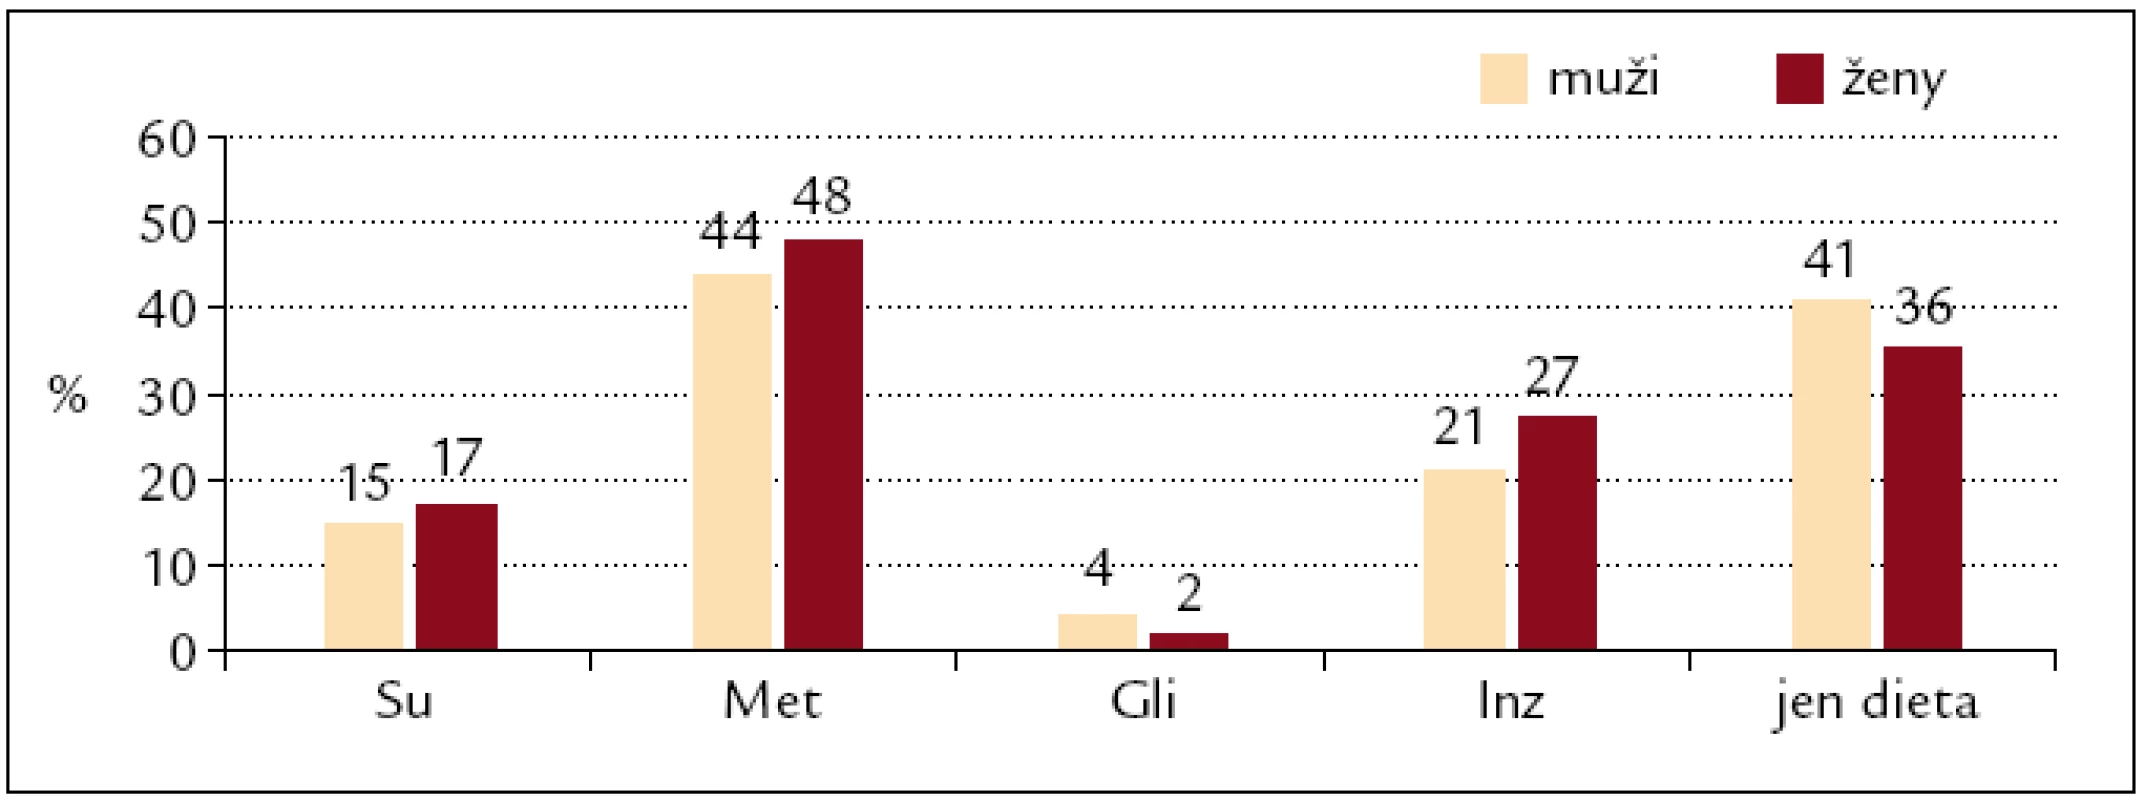 Užívání antidiabetik u mužů a žen s diabetem 2. typu (n = 415).
Su – deriváty sulfonylurey, Met – metformin, Gli – glitazony, Inz – inzulin